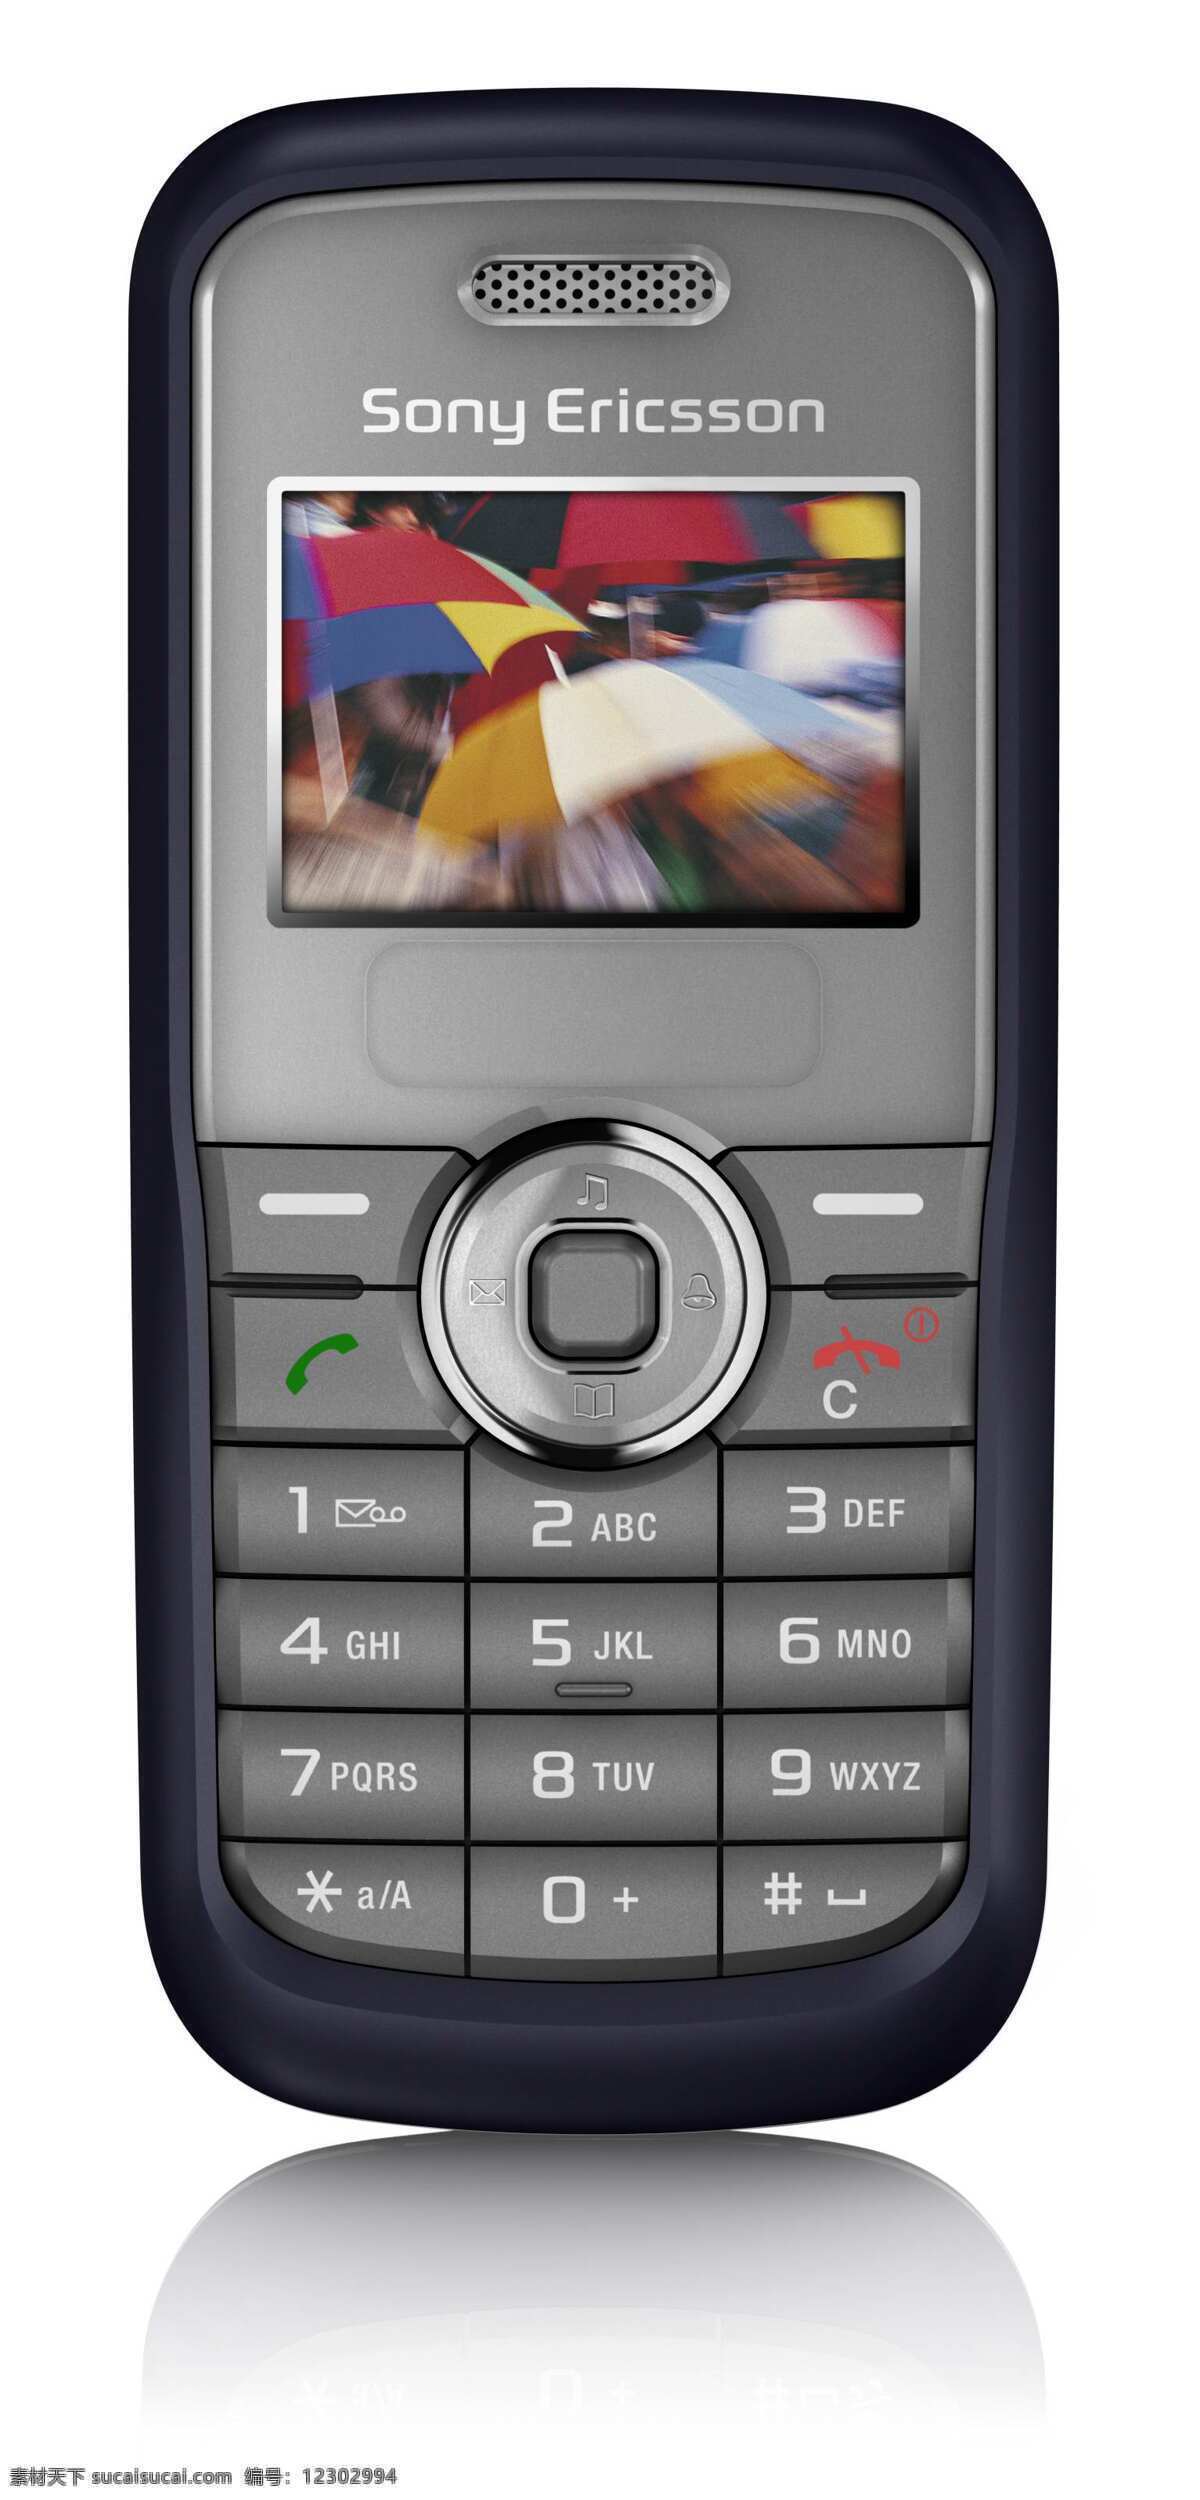 索尼老式手机 sony 索尼 老式手机 手机前视图 手机平面图 手机效果图 手机设计 通信 生活用品 复古 经典 产品平面 数码产品 现代科技